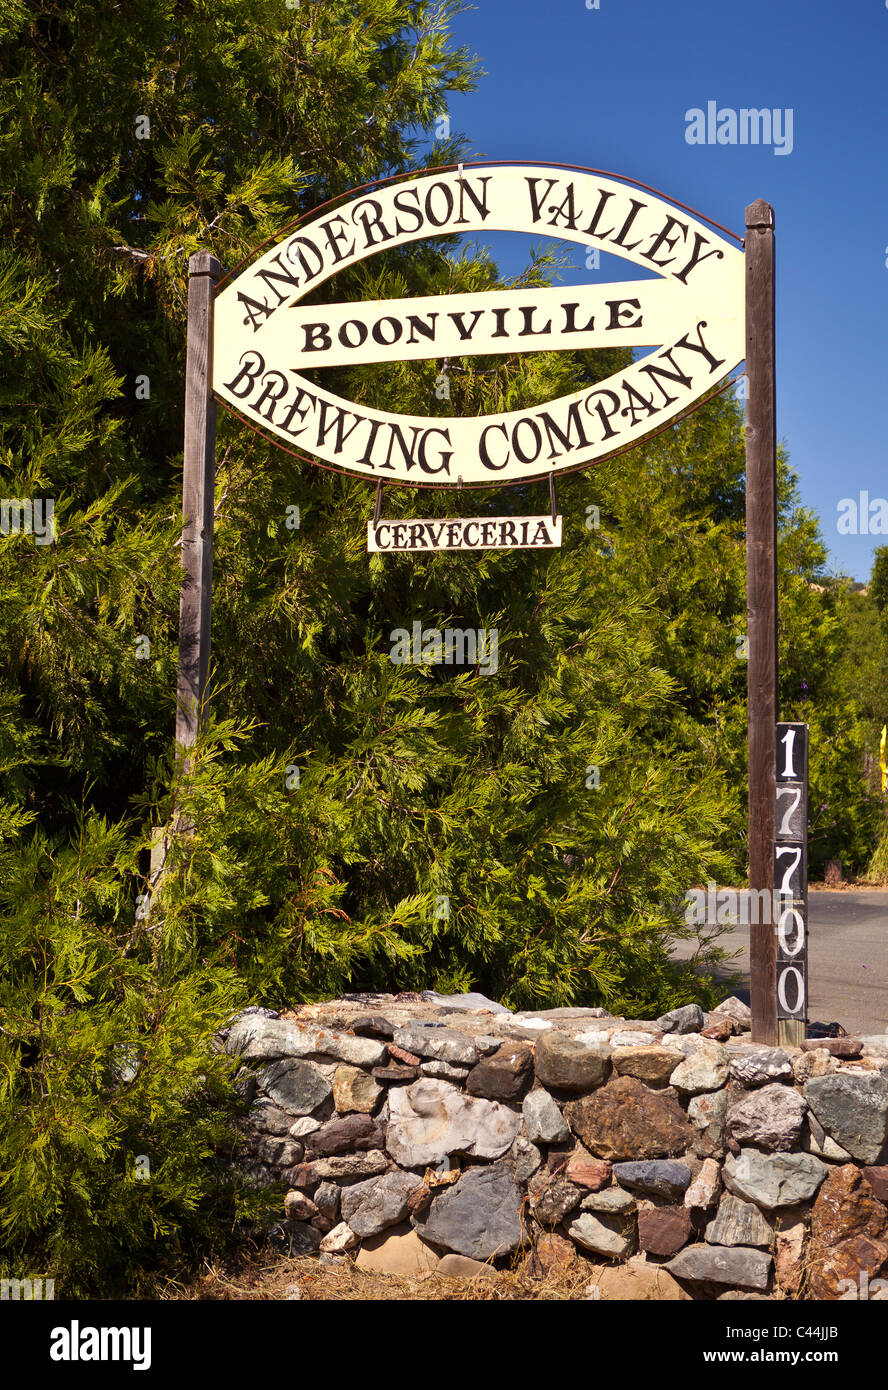 BOONVILLE, CALIFORNIA, STATI UNITI D'AMERICA - Anderson Valley Brewing Company firmano a Mendocino County. Foto Stock